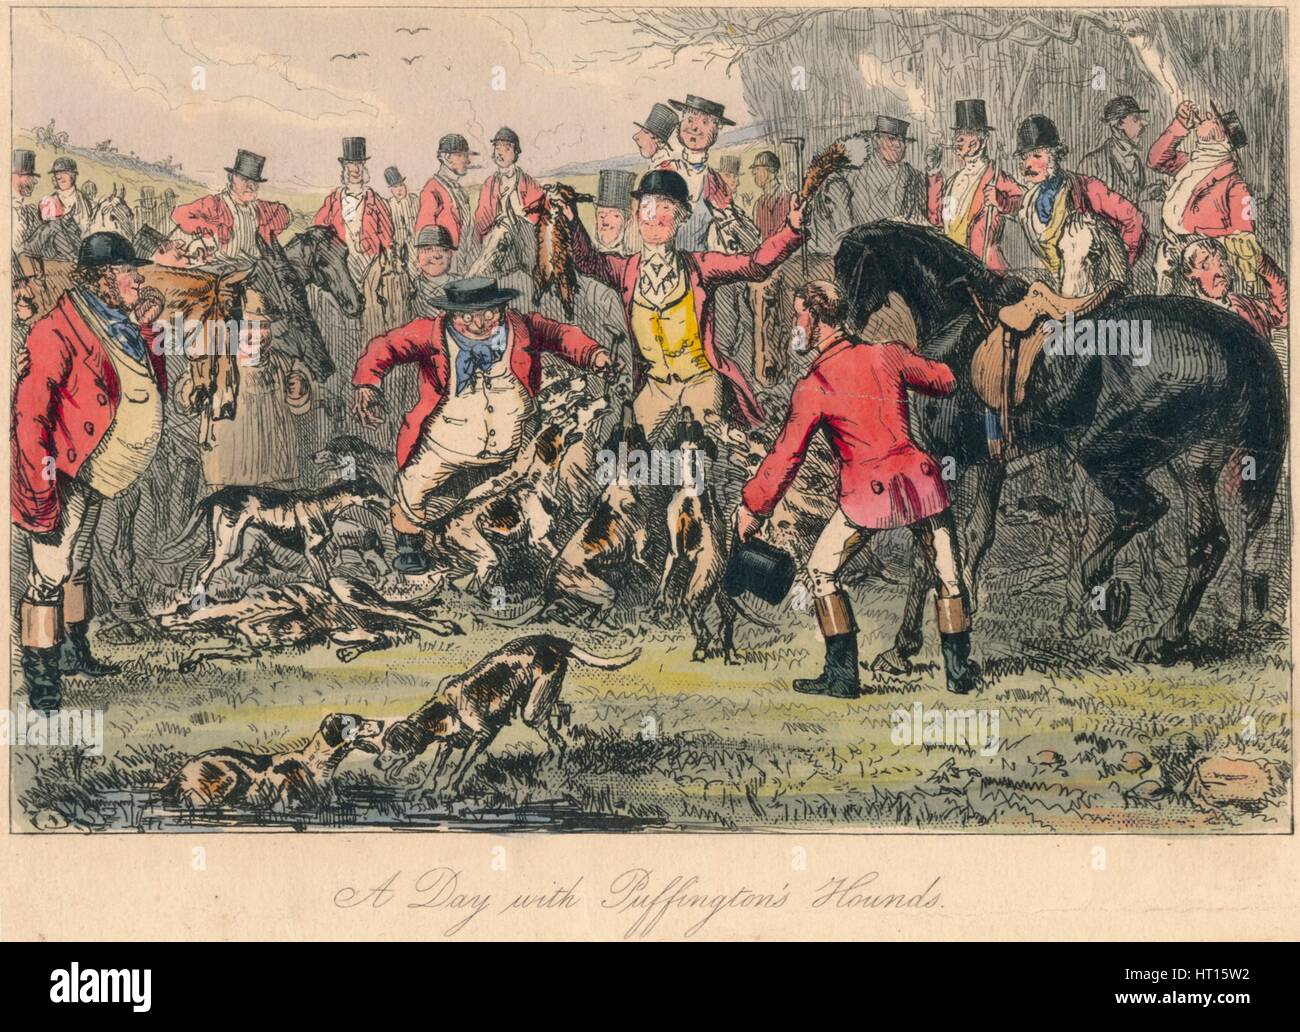 "Ein Tag mit Puffington Hounds", 1865. Künstler: Bradbury, Evans und Co, Hablot Knight Browne, John Leech. Stockfoto